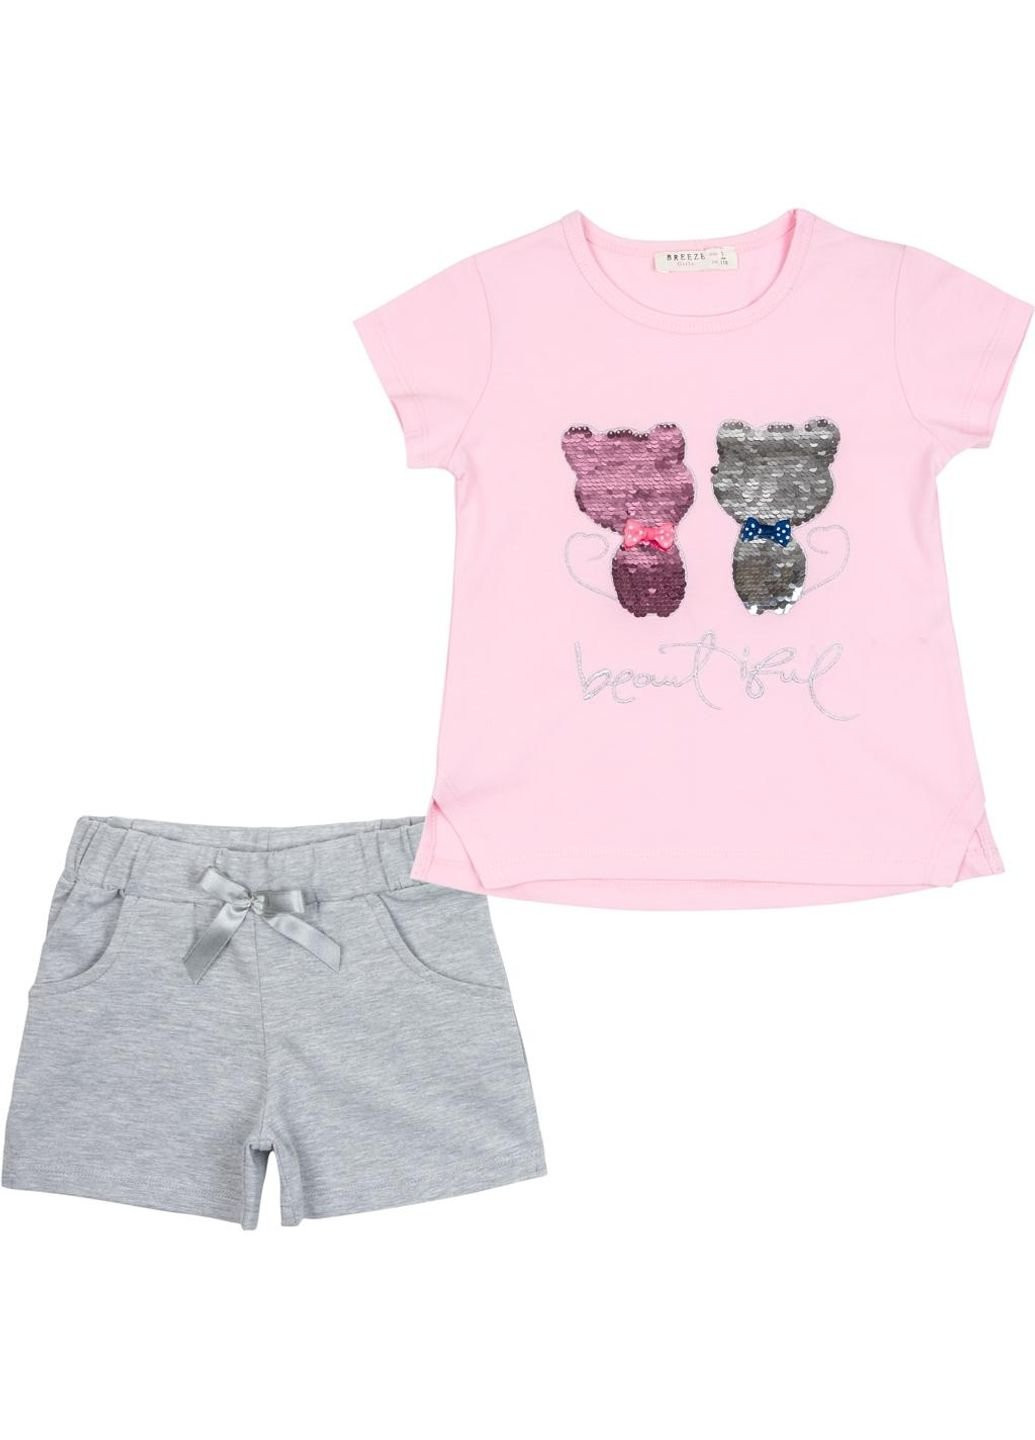 Светло-серый летний набор детской одежды с котятами (10843-110g-pink) Breeze